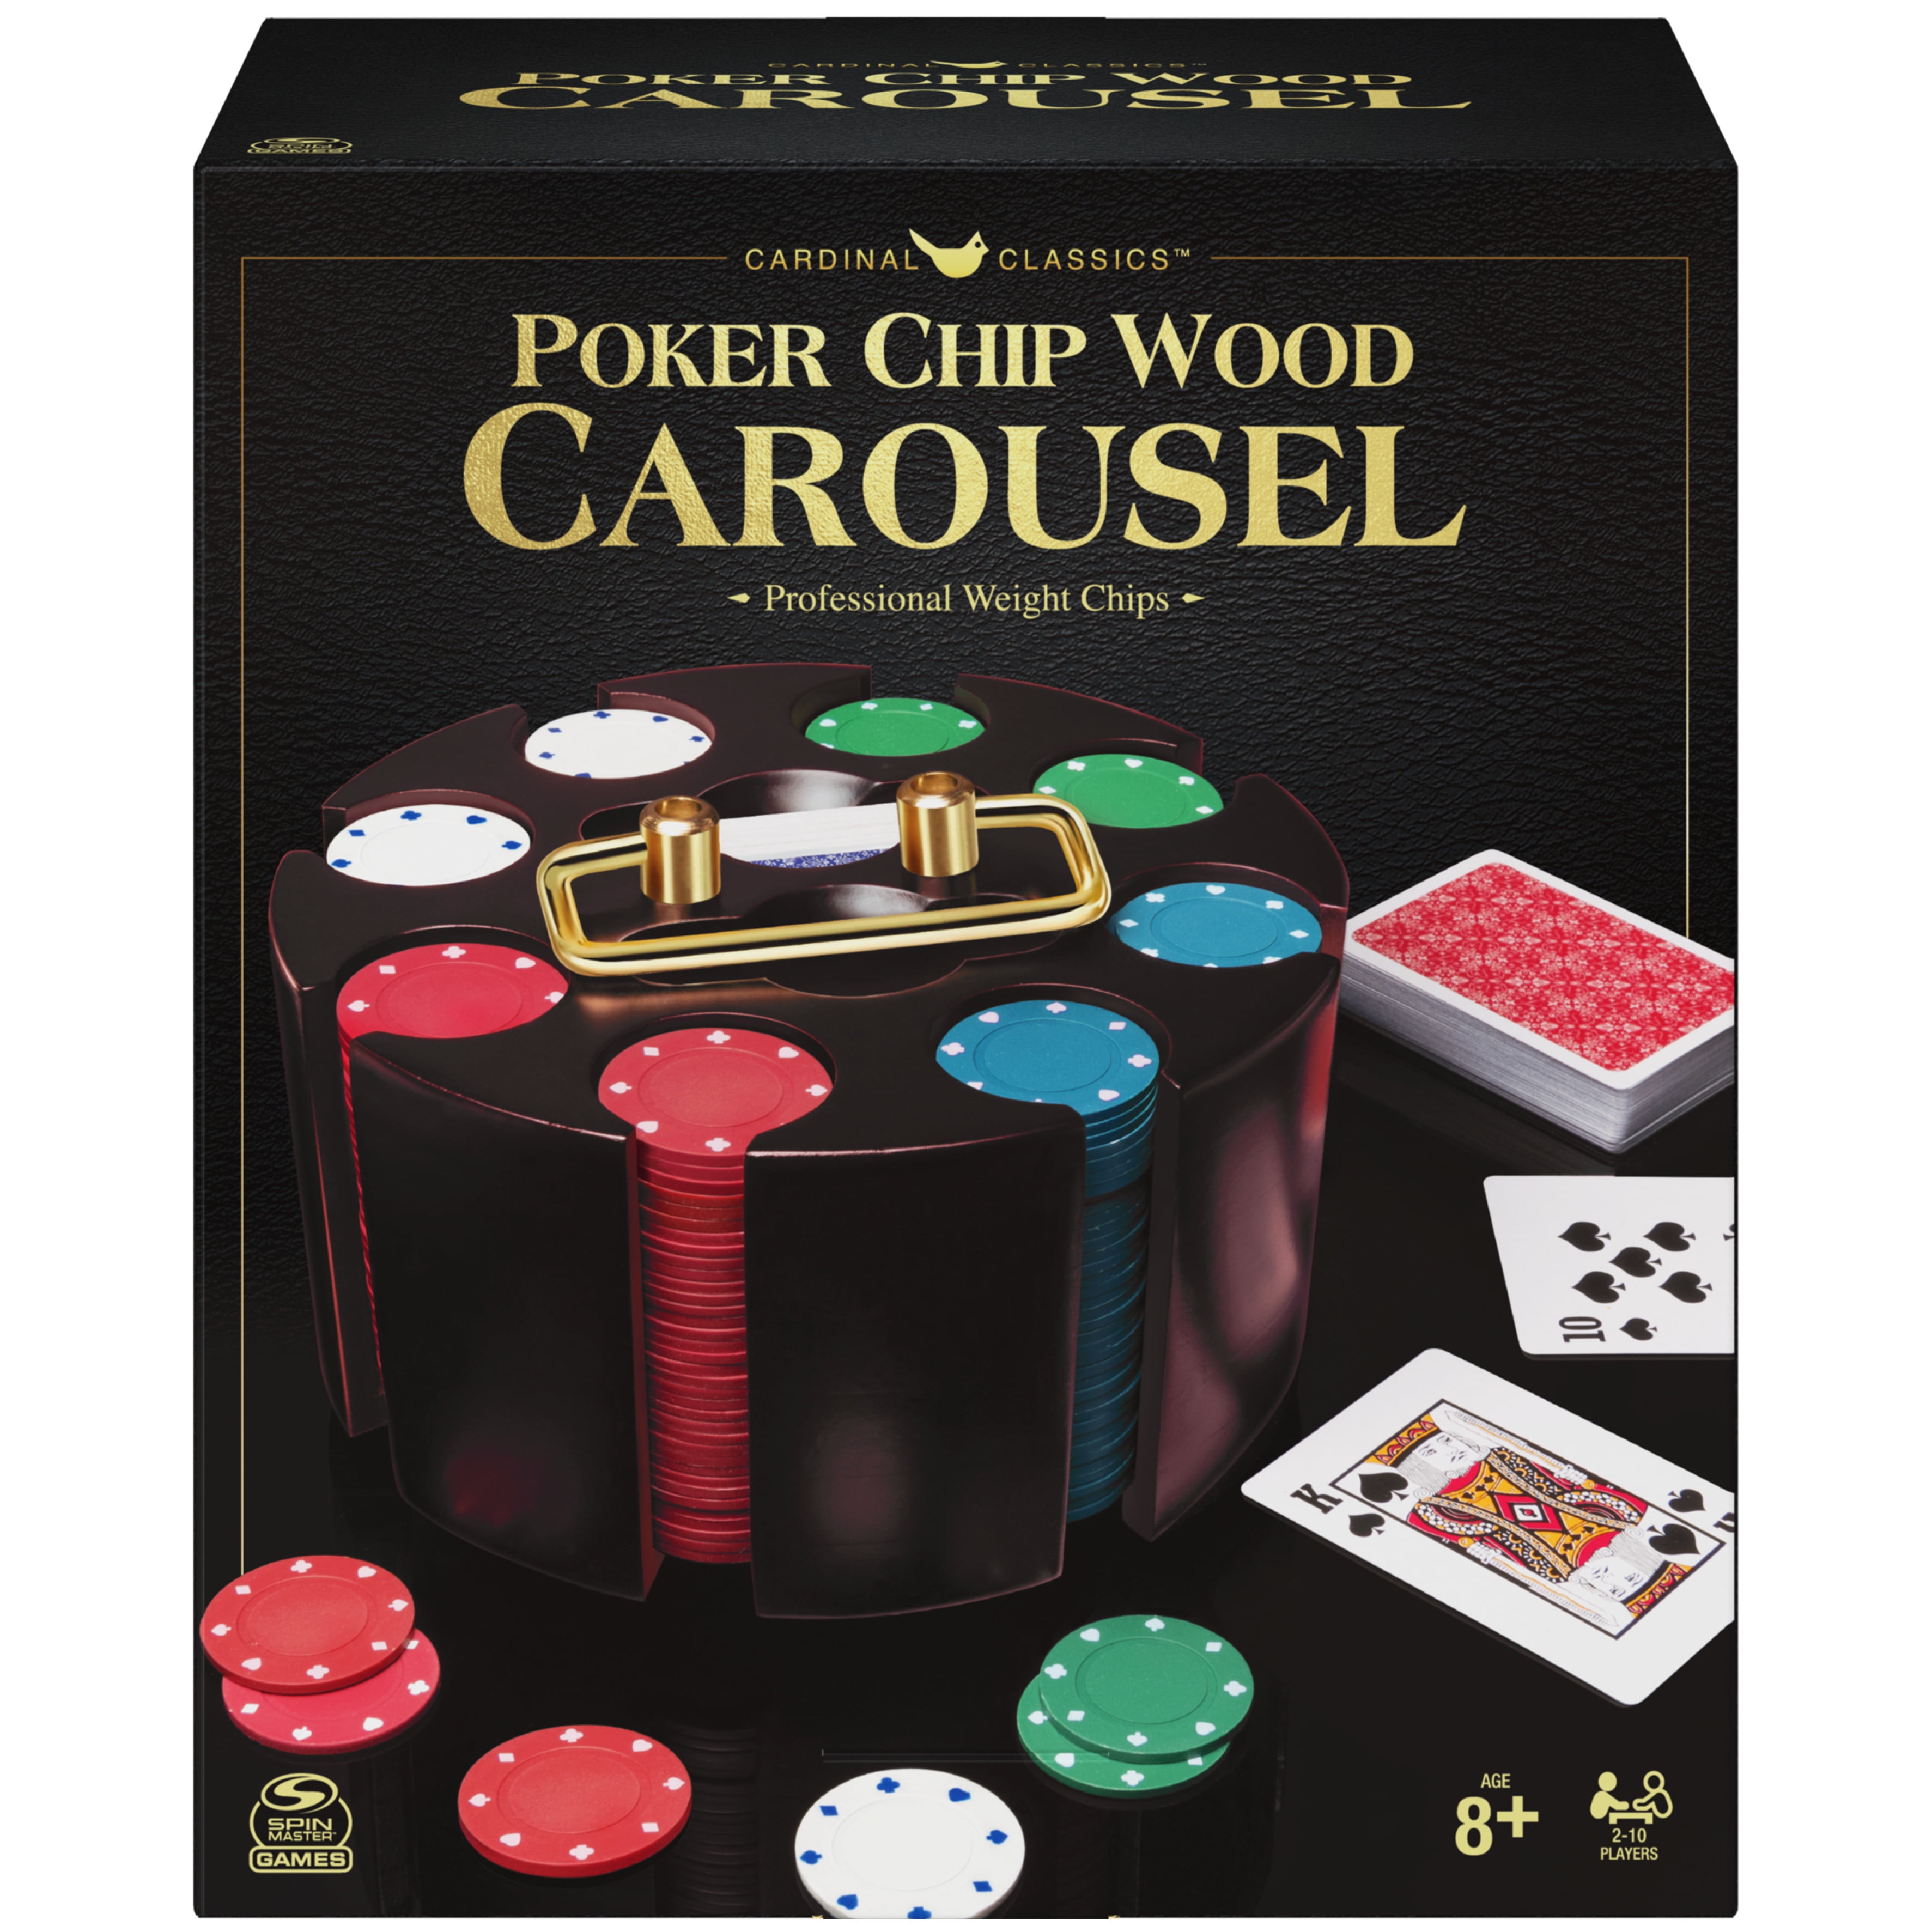 Mini Blackjack Table Vegas Style Felt Cards Poker Chips Home Office Travel NEW! 